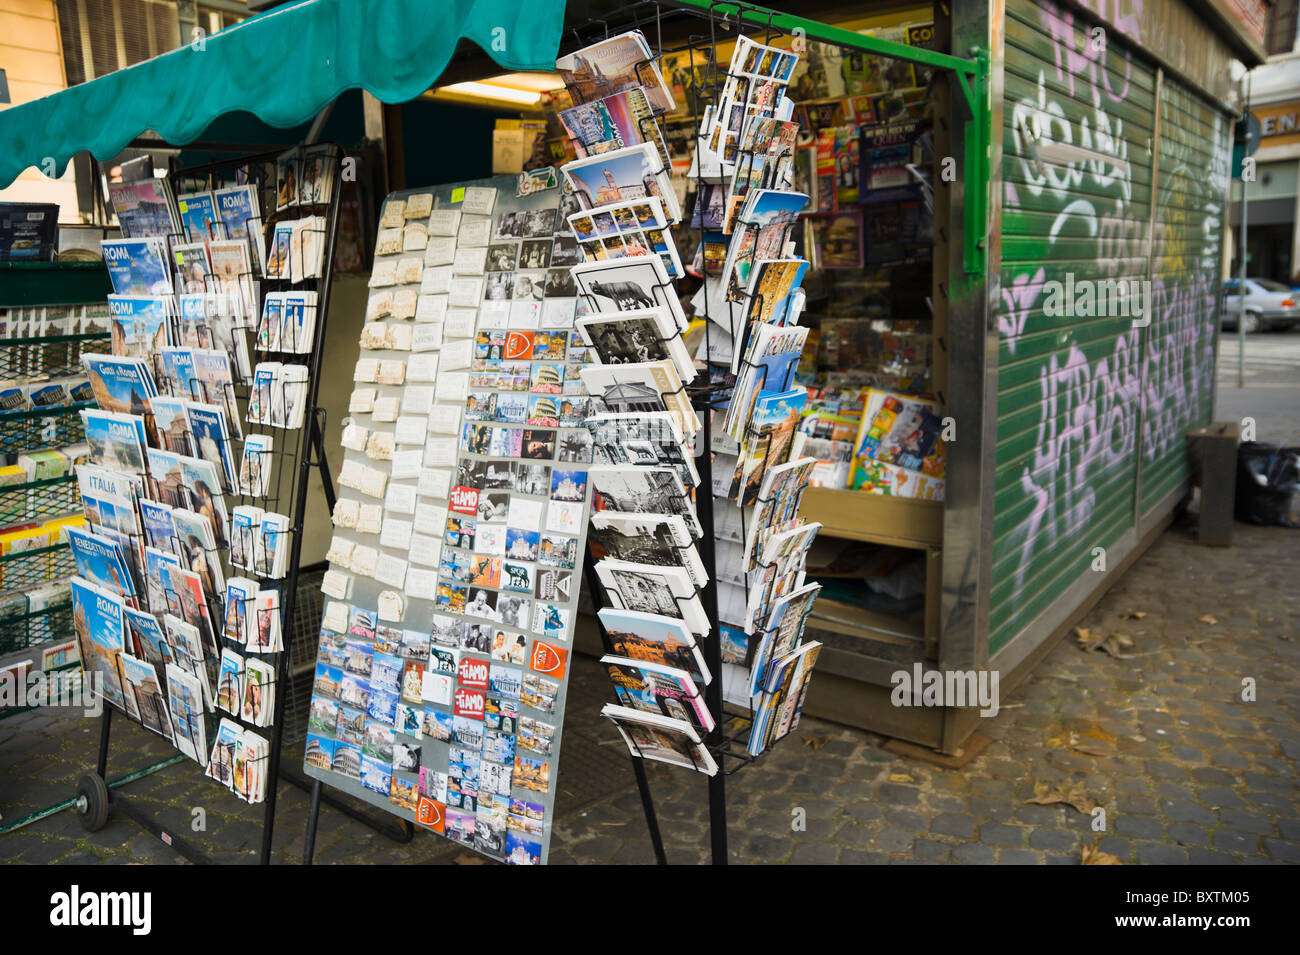 Rome, marchand de cartes postales vente kiosque, autocollants et les guides touristiques. Banque D'Images